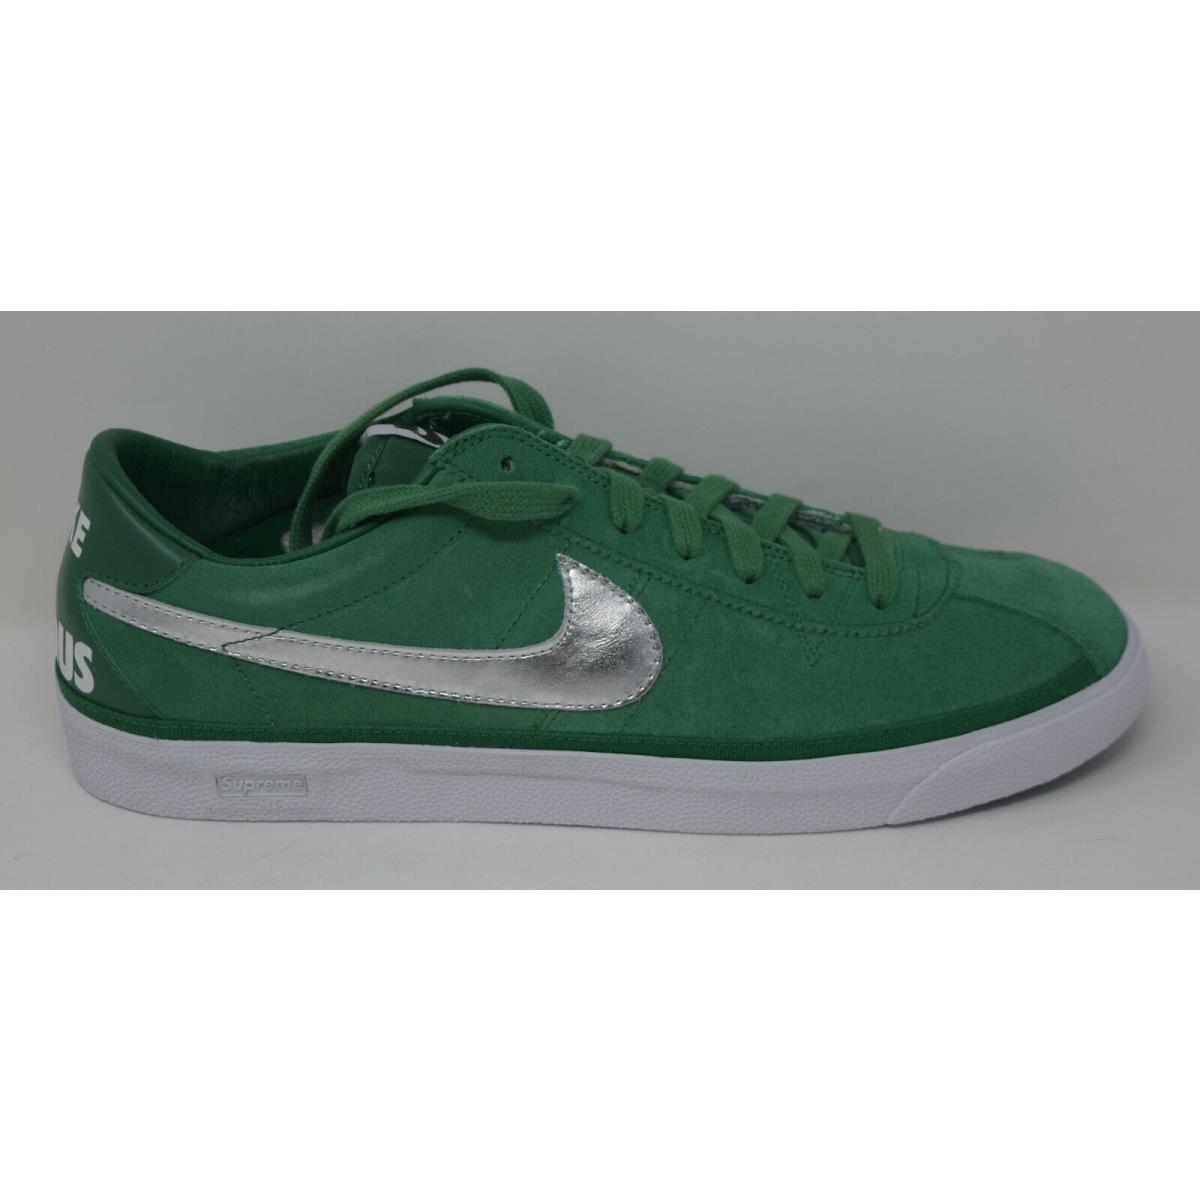 Nike shoes Bruin - Green 4